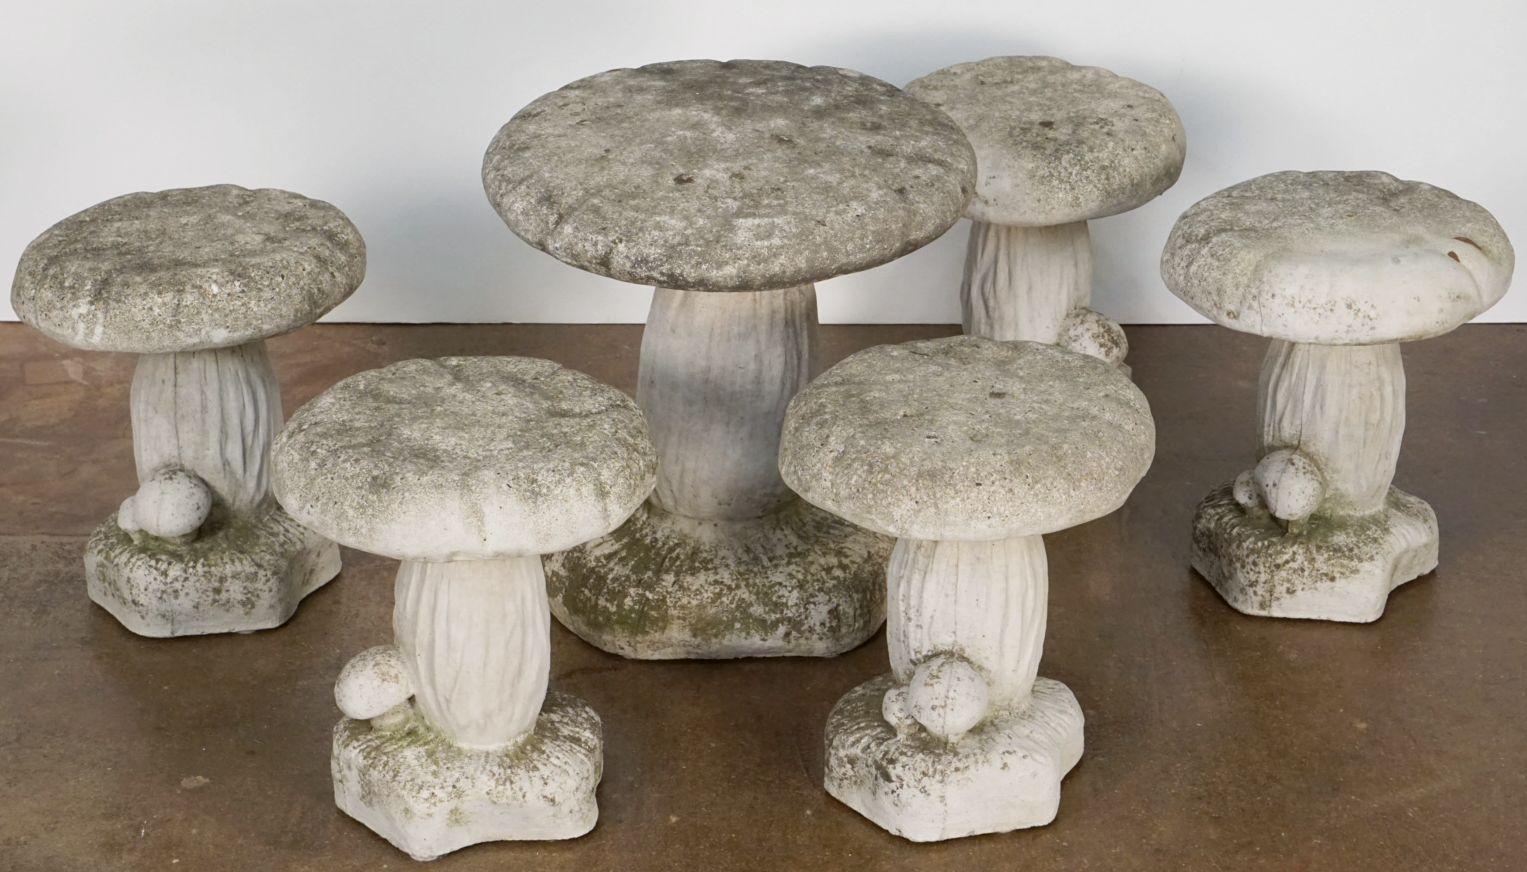 Un bel ensemble de sculptures belges de champignons de jardin (ou champignons crapauds) en pierre de composition avec des détails naturalistes et de tailles différentes.

Le plus grand a une hauteur de 18 pouces et un diamètre supérieur de 16